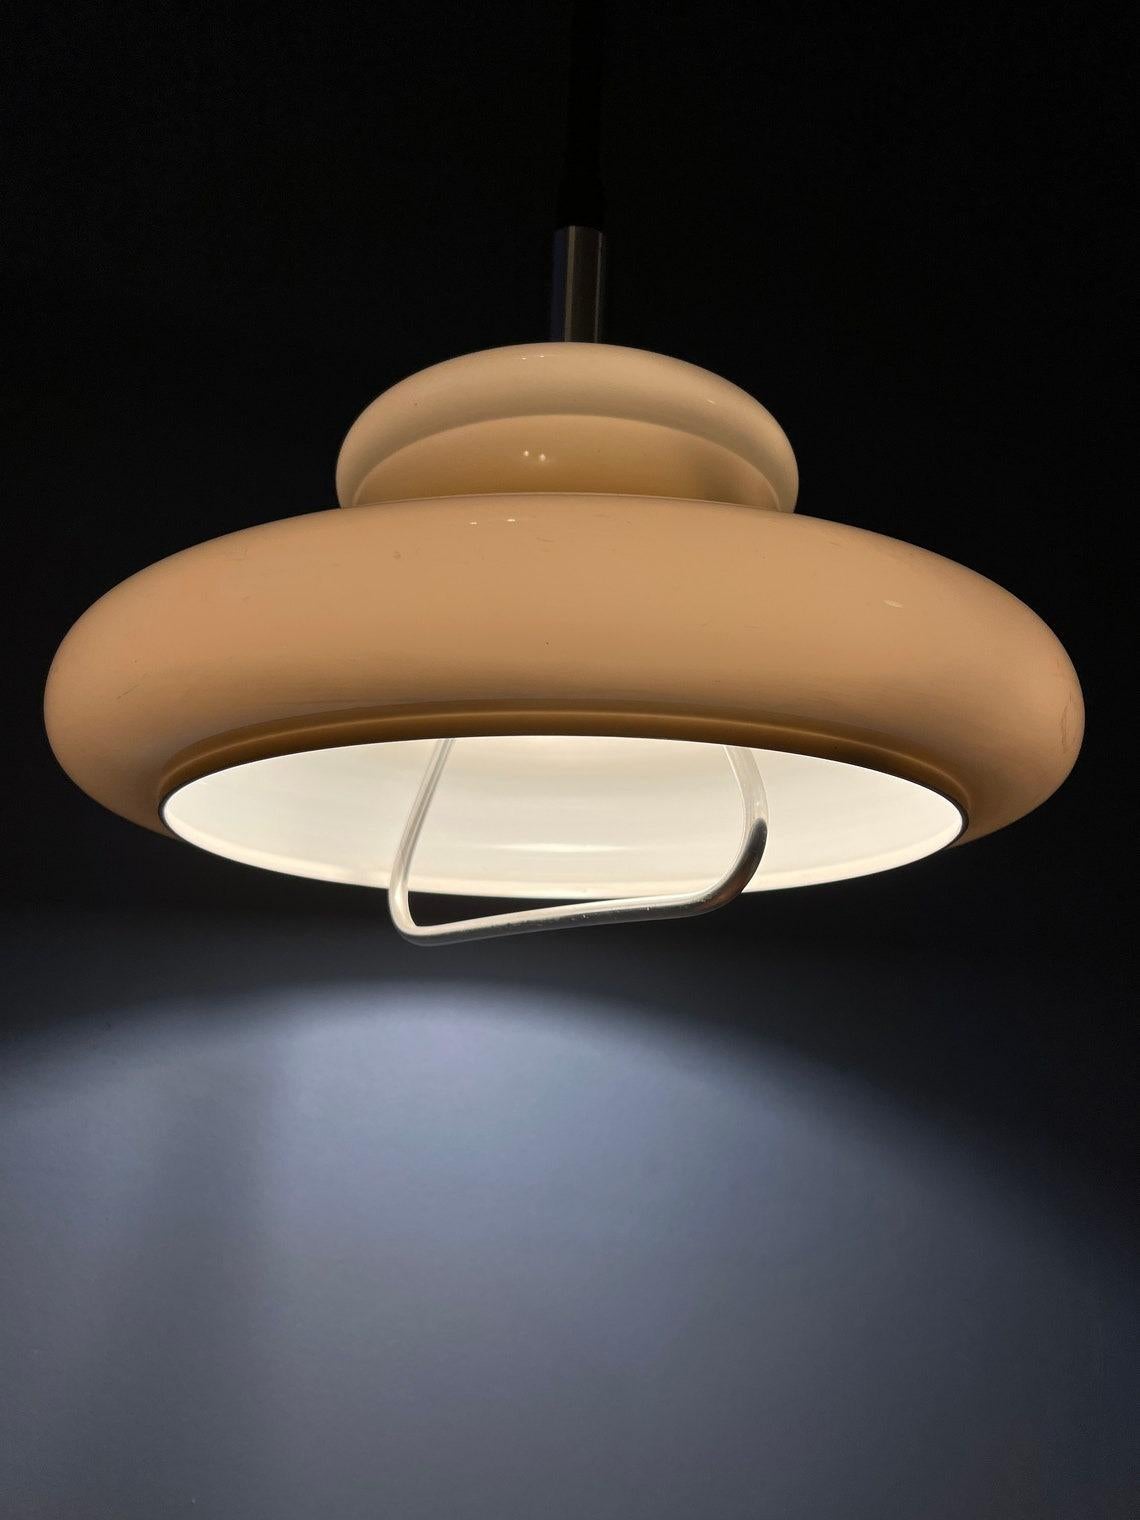 Lampe suspendue de l'ère spatiale par Herda avec un abat-jour champignon en verre acrylique beige. La hauteur de la lampe peut être réglée grâce au système de montée et de descente.

Informations complémentaires :
Matériaux : Métal,